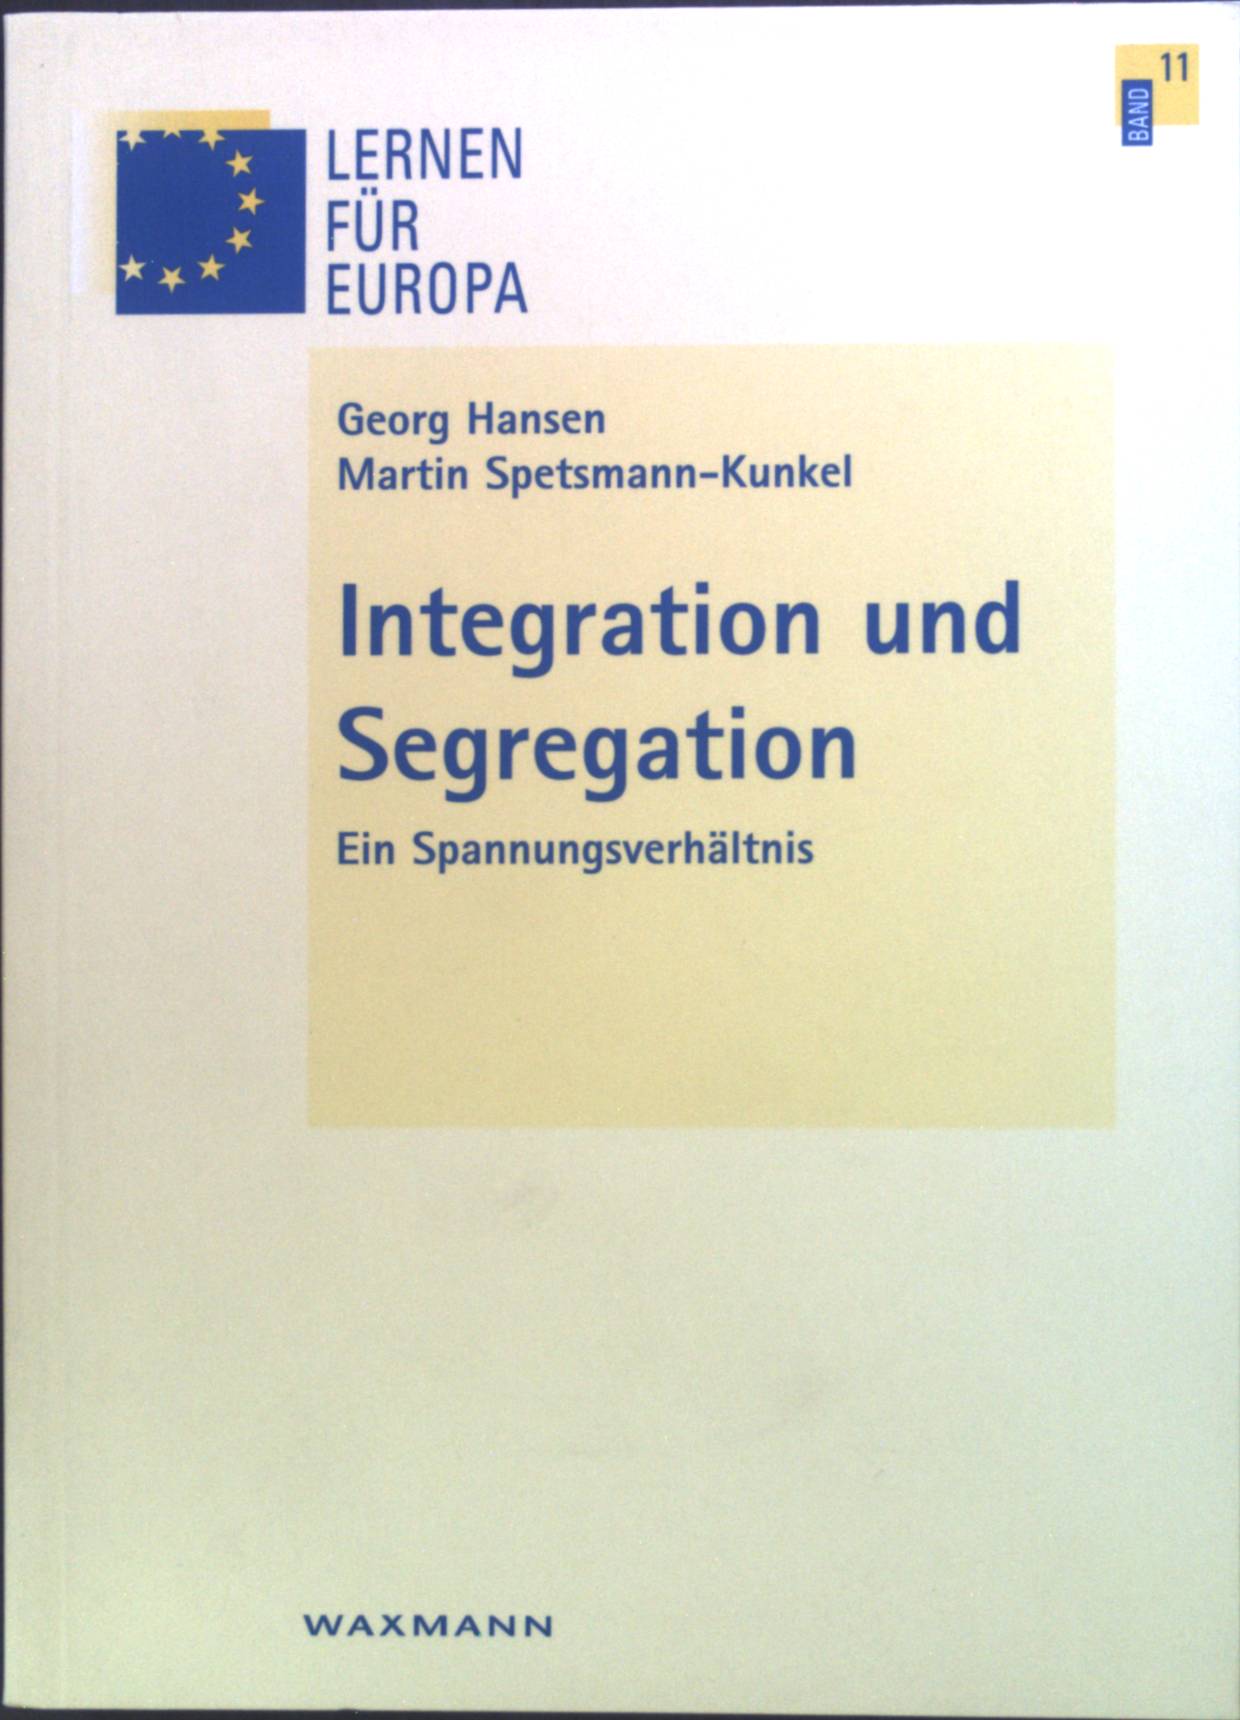 Integration und Segregation : Ein Spannungsverhältnis. Lernen für Europa ; Bd. 11 - Hansen, Georg und Martin Spetsmann-Kunkel